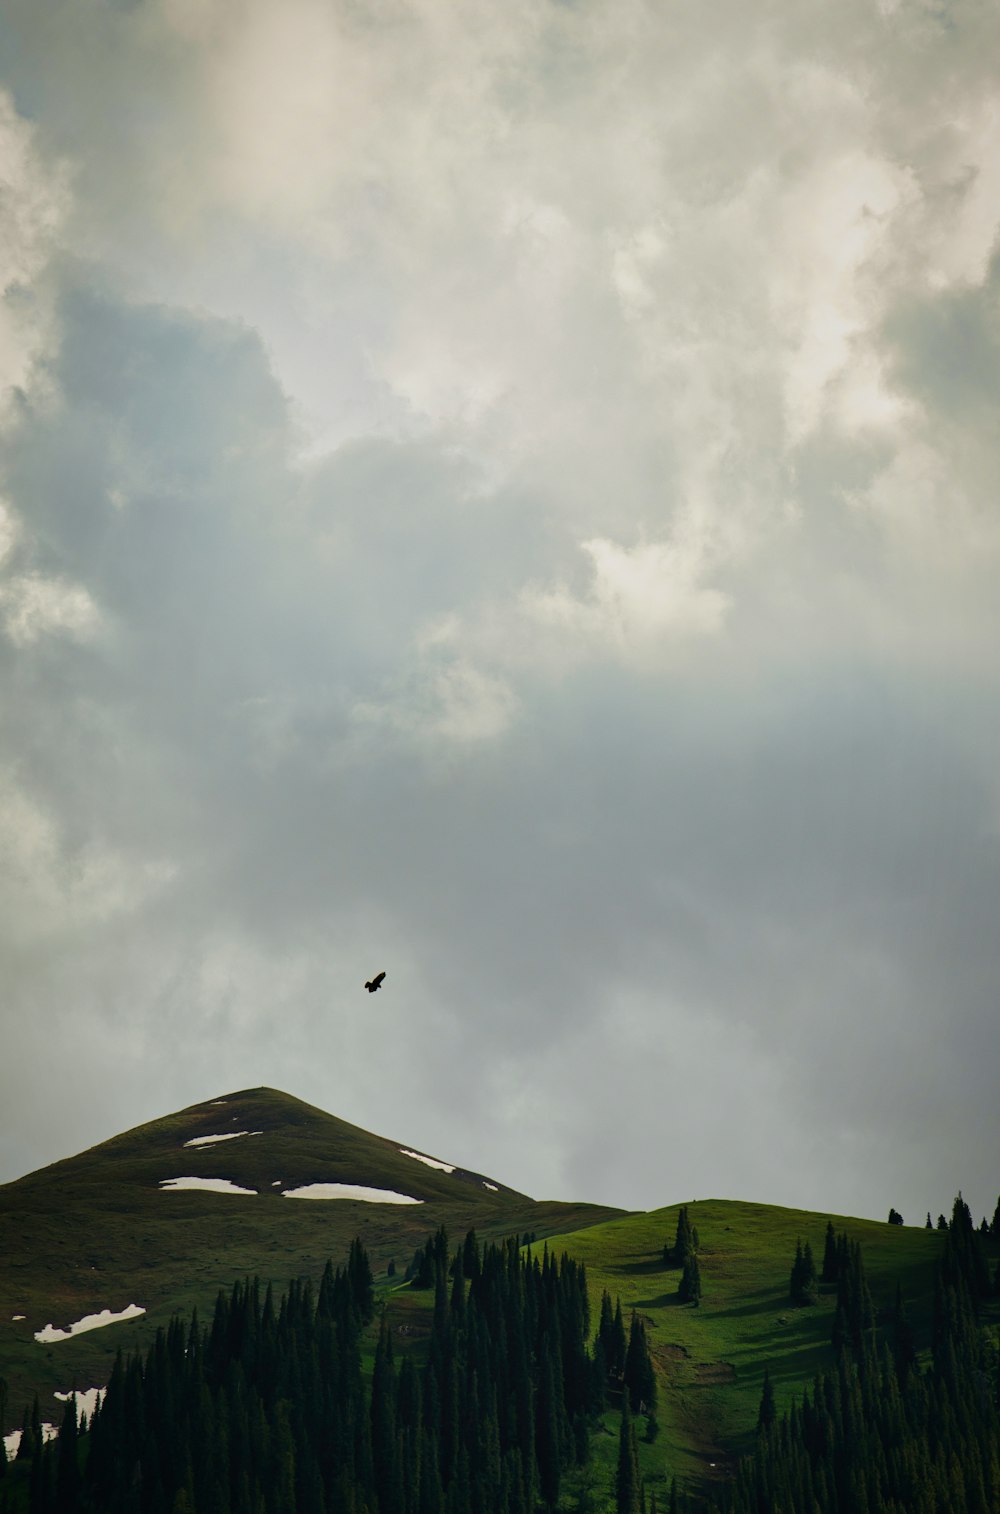 a bird flying over a lush green hillside under a cloudy sky